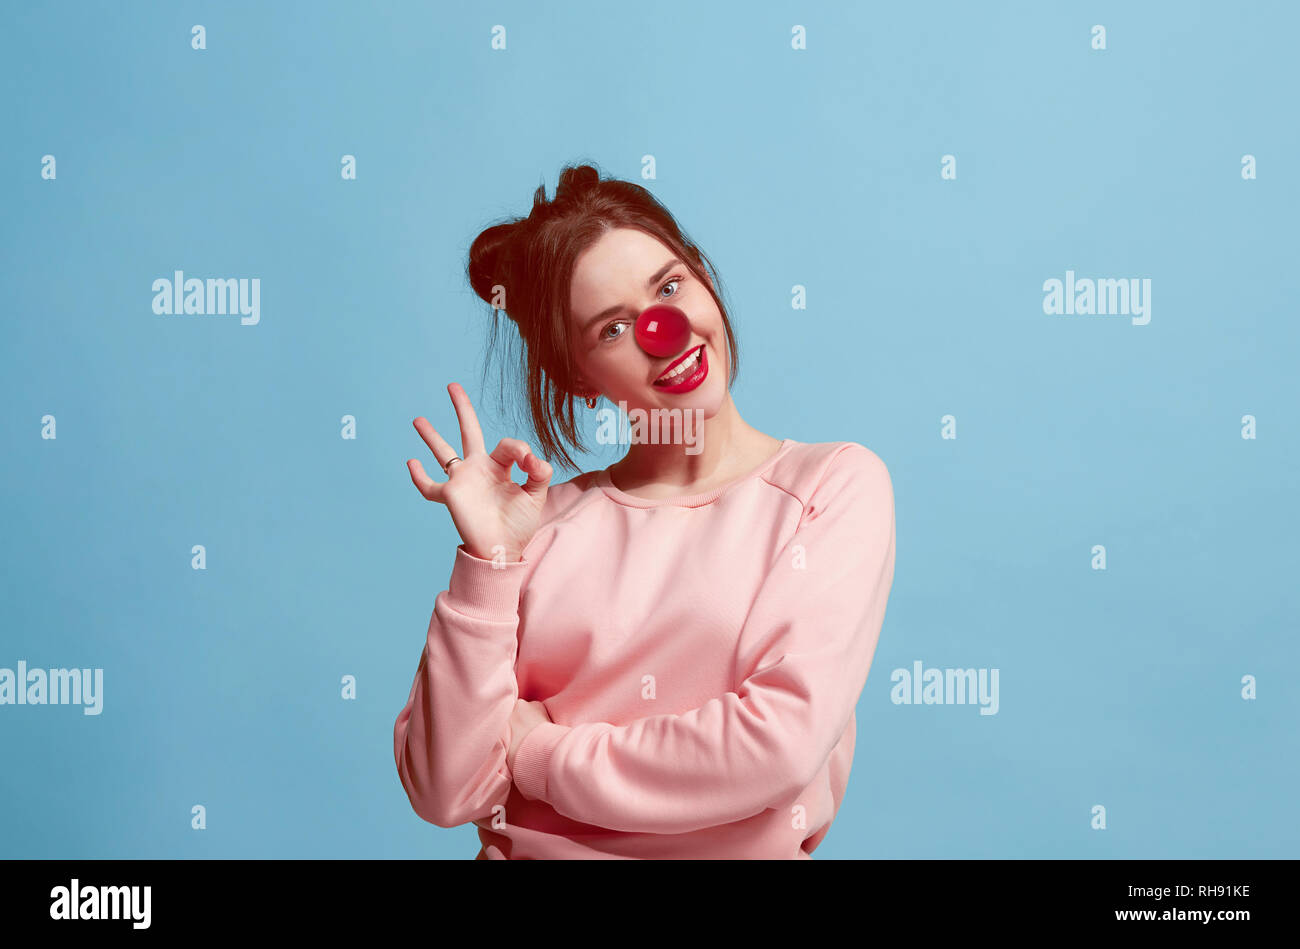 La felice sorpresa e donna sorridente sul naso rosso al giorno. Il clown, divertimento, party, celebrazione, divertente, gioia, vacanze, umorismo concept Foto Stock